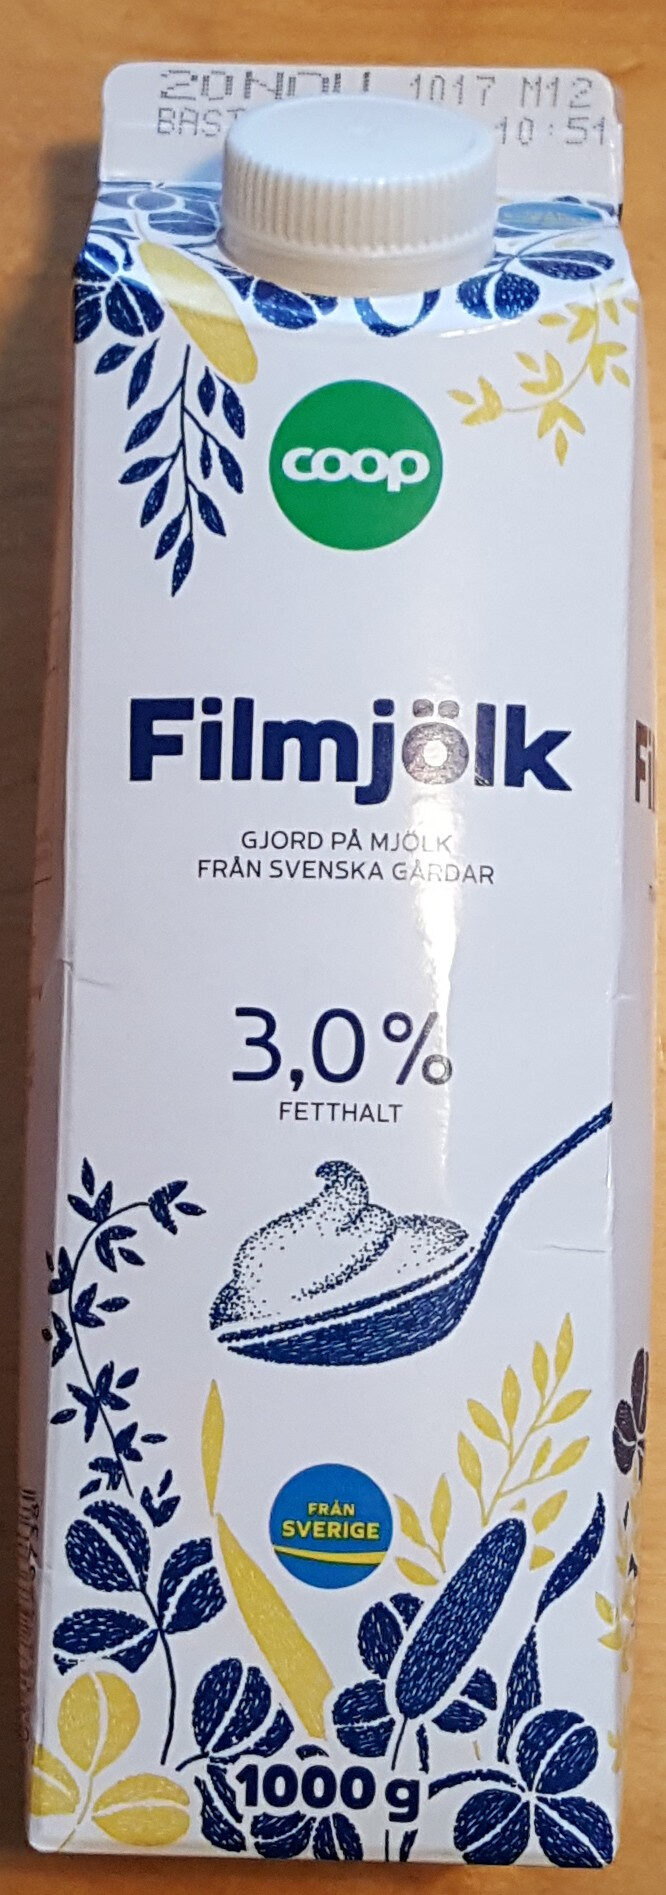 Filmjölk - Produkt